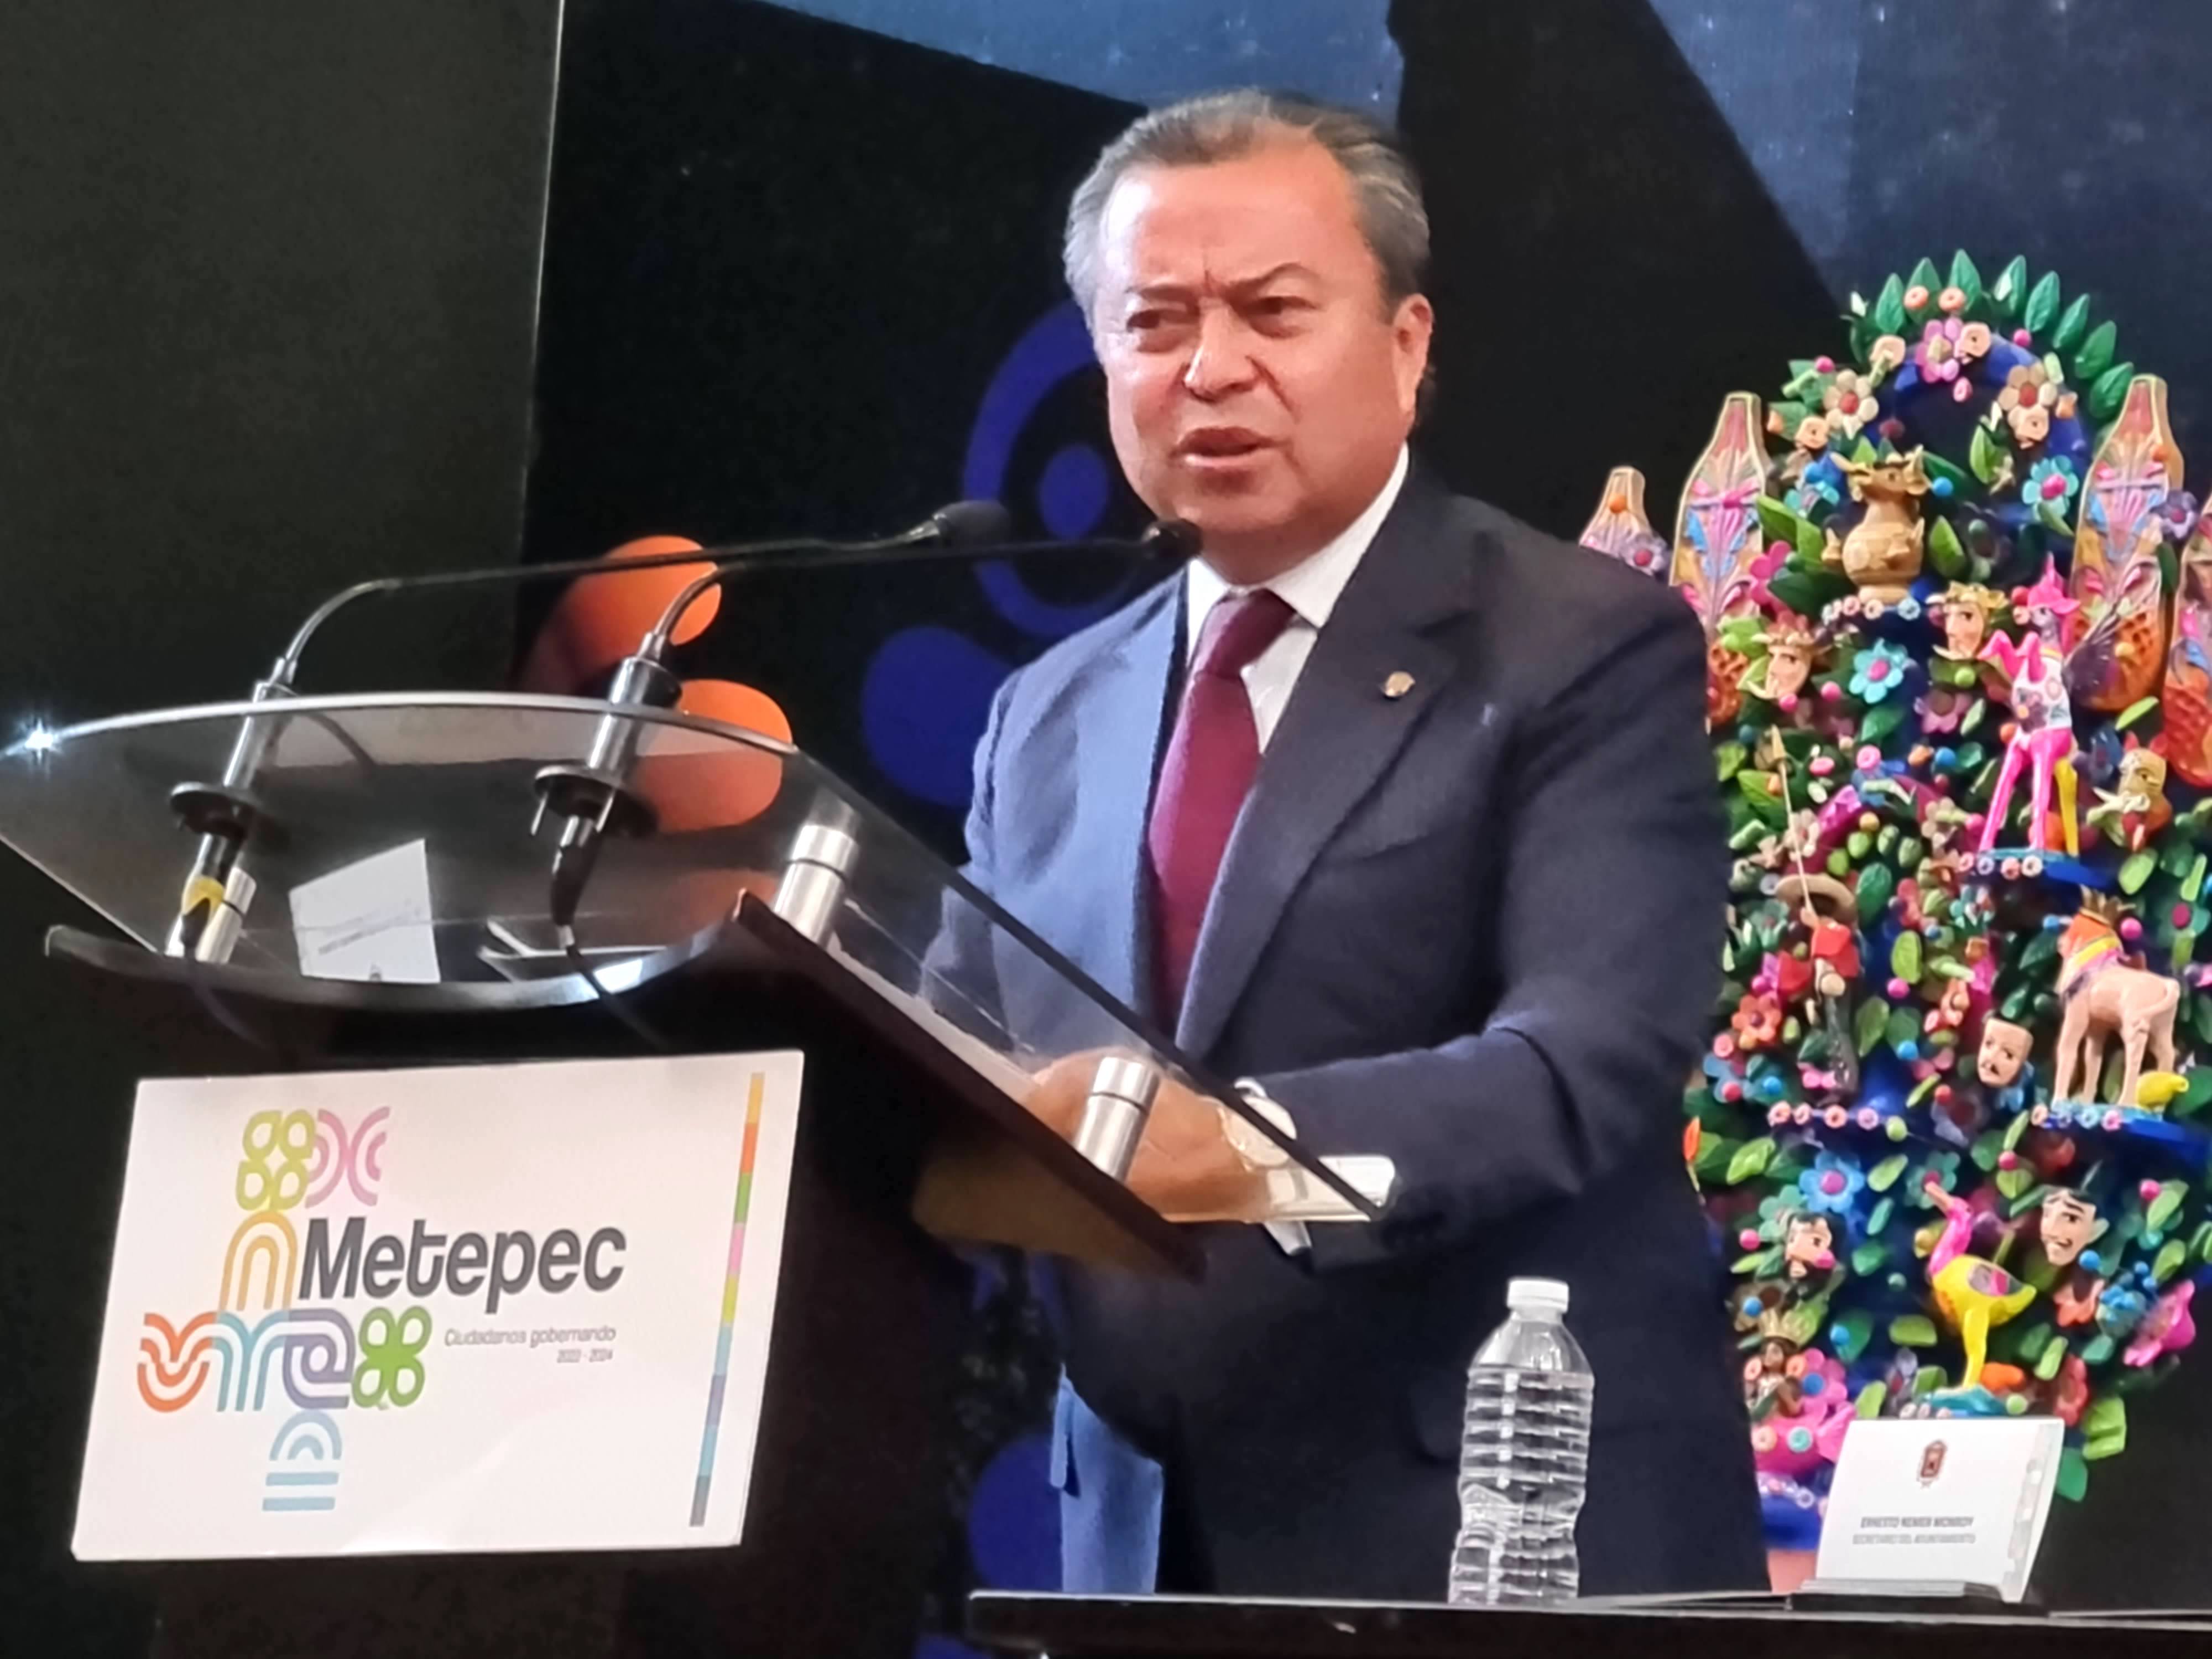 Metepec vive un presente para disfrutar y un futuro esperanzador: César Camacho; habló en nombre de los ganadores de la Presea 2022